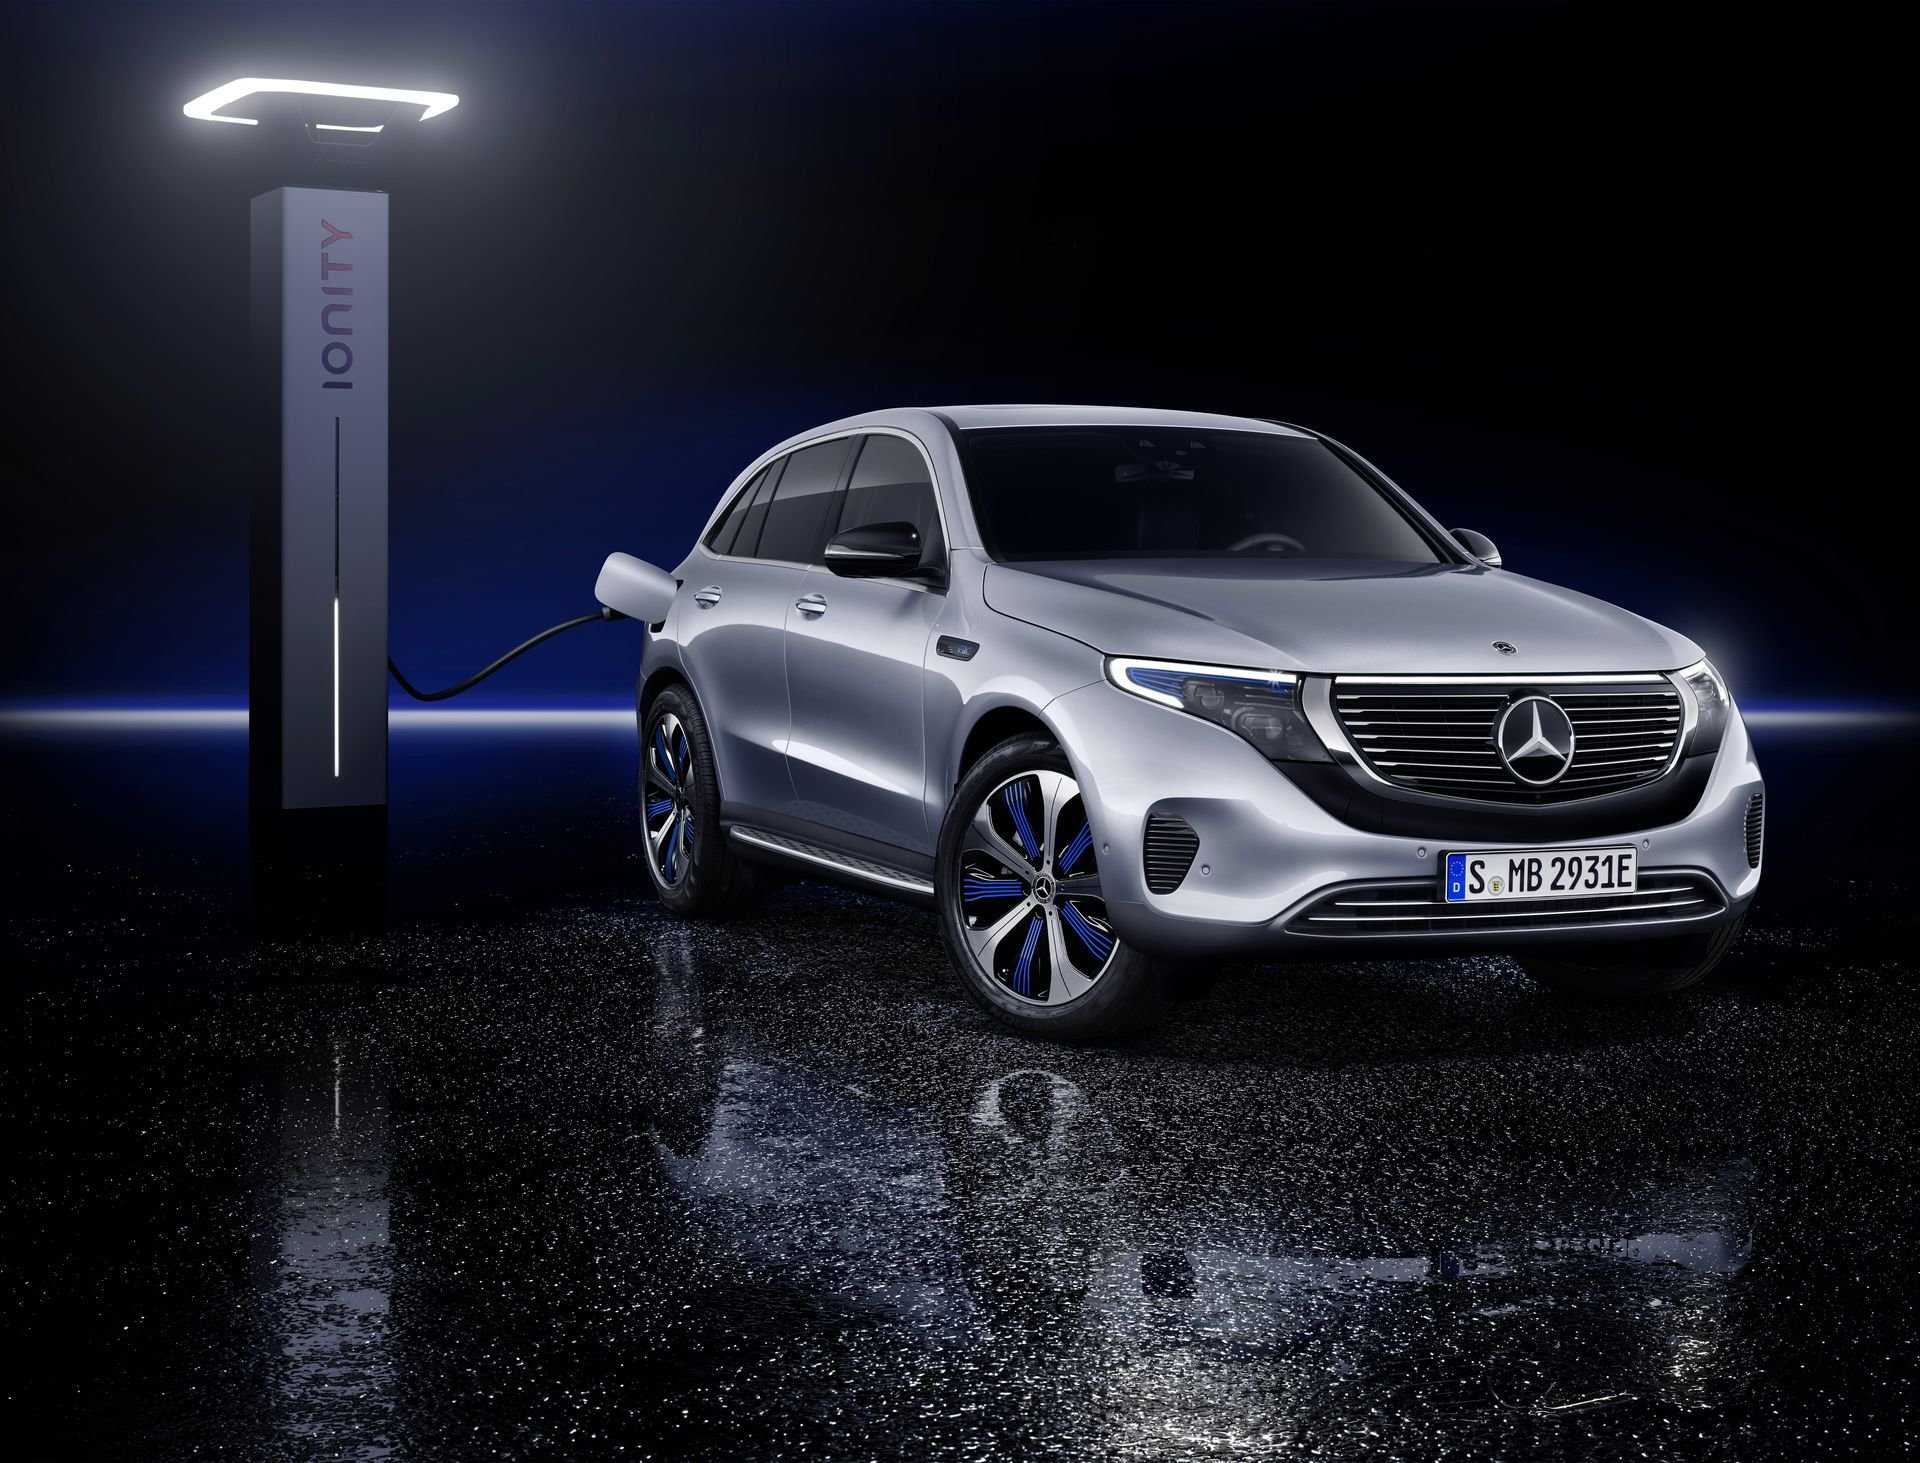 Mercedes-benz x-class 2019-2020 цена, технические характеристики, фото, видео тест-драйв